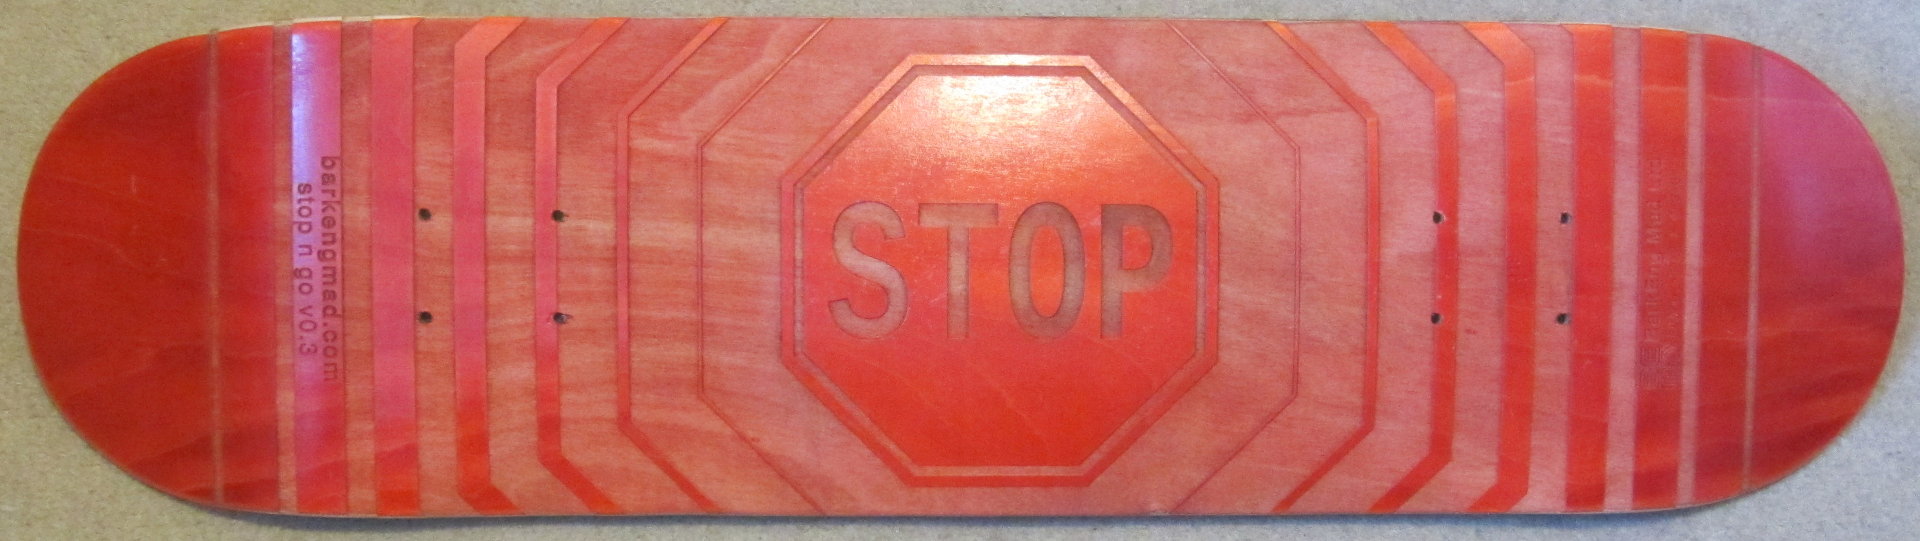 Stop n Go Laser Engraved Skateboard Deck